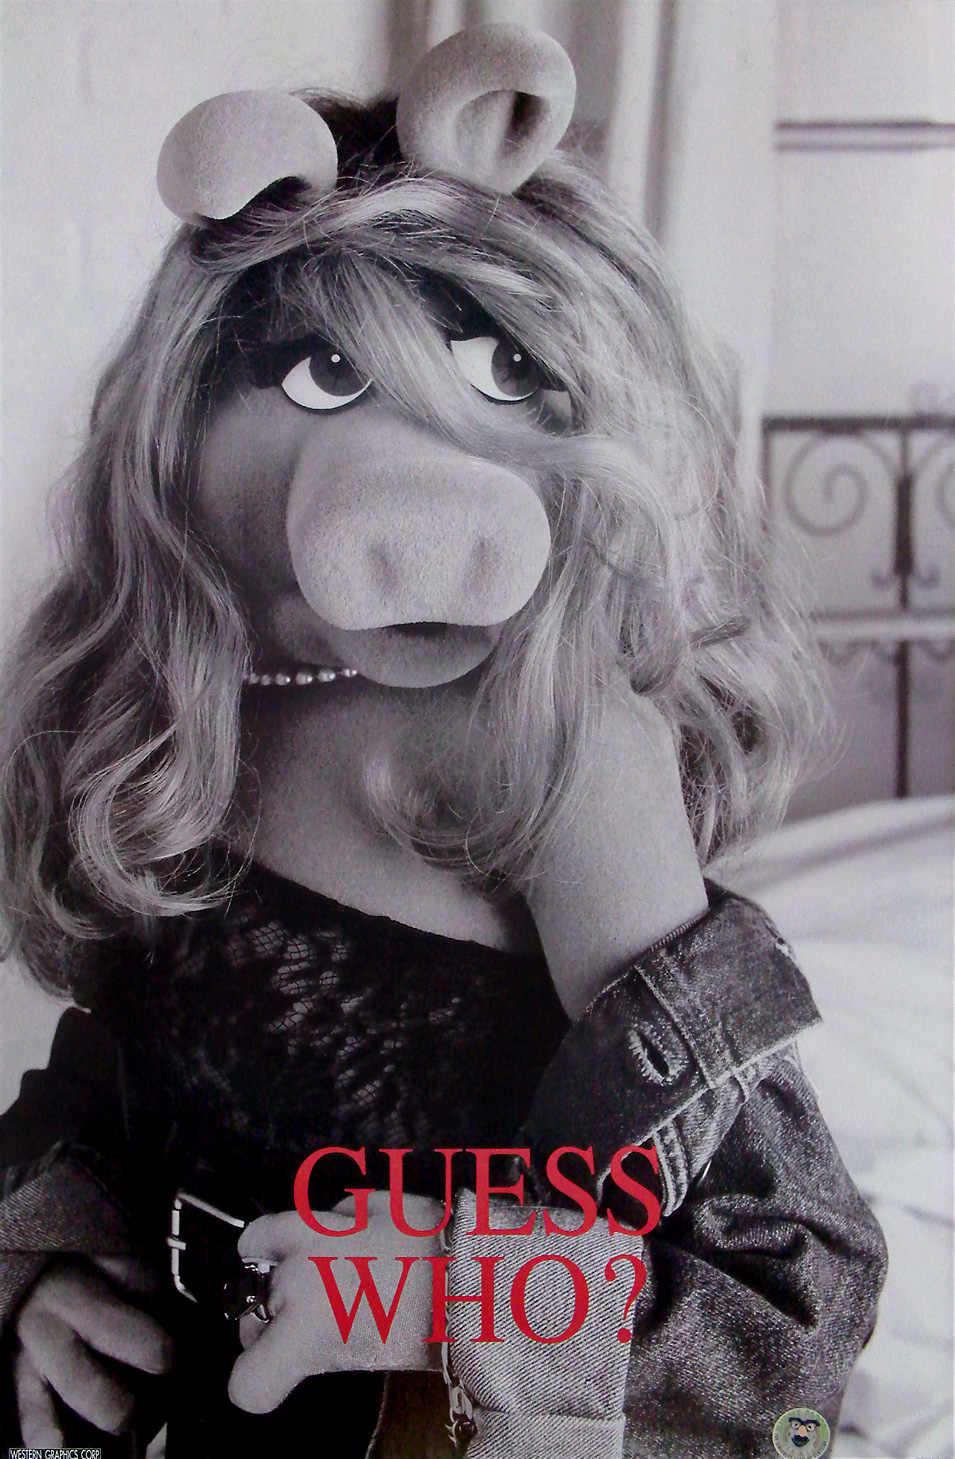 Kermit the Frog's 1996 Advertising Parodies! | Muppet Wiki | Fandom